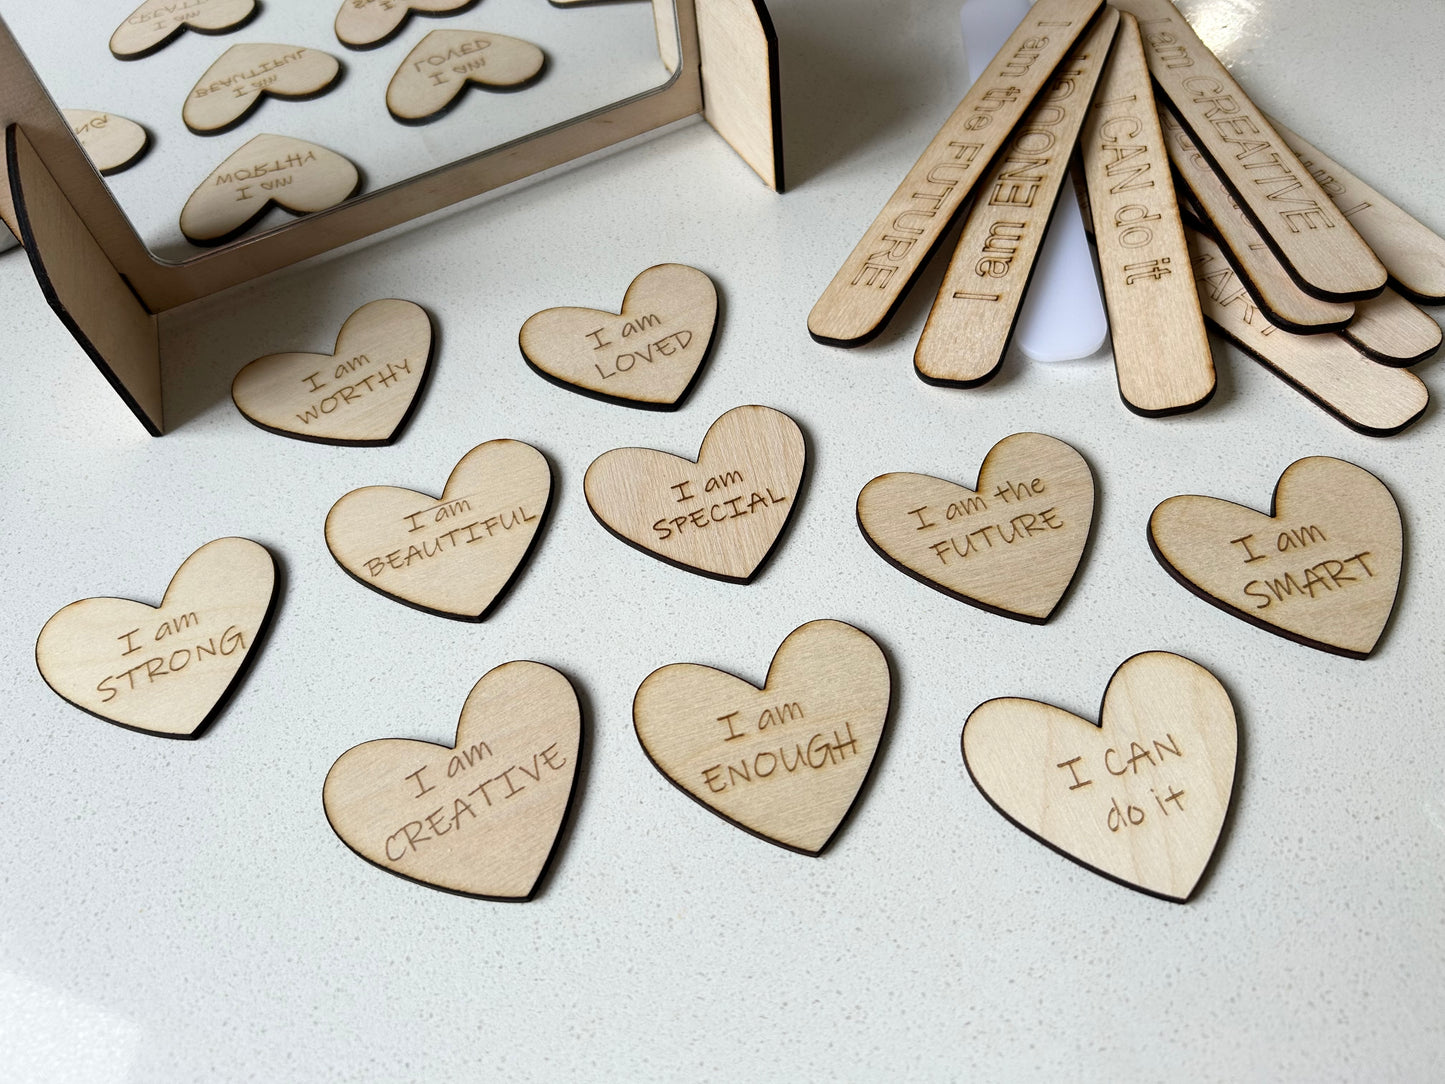 10 Wood Heart Affirmations set